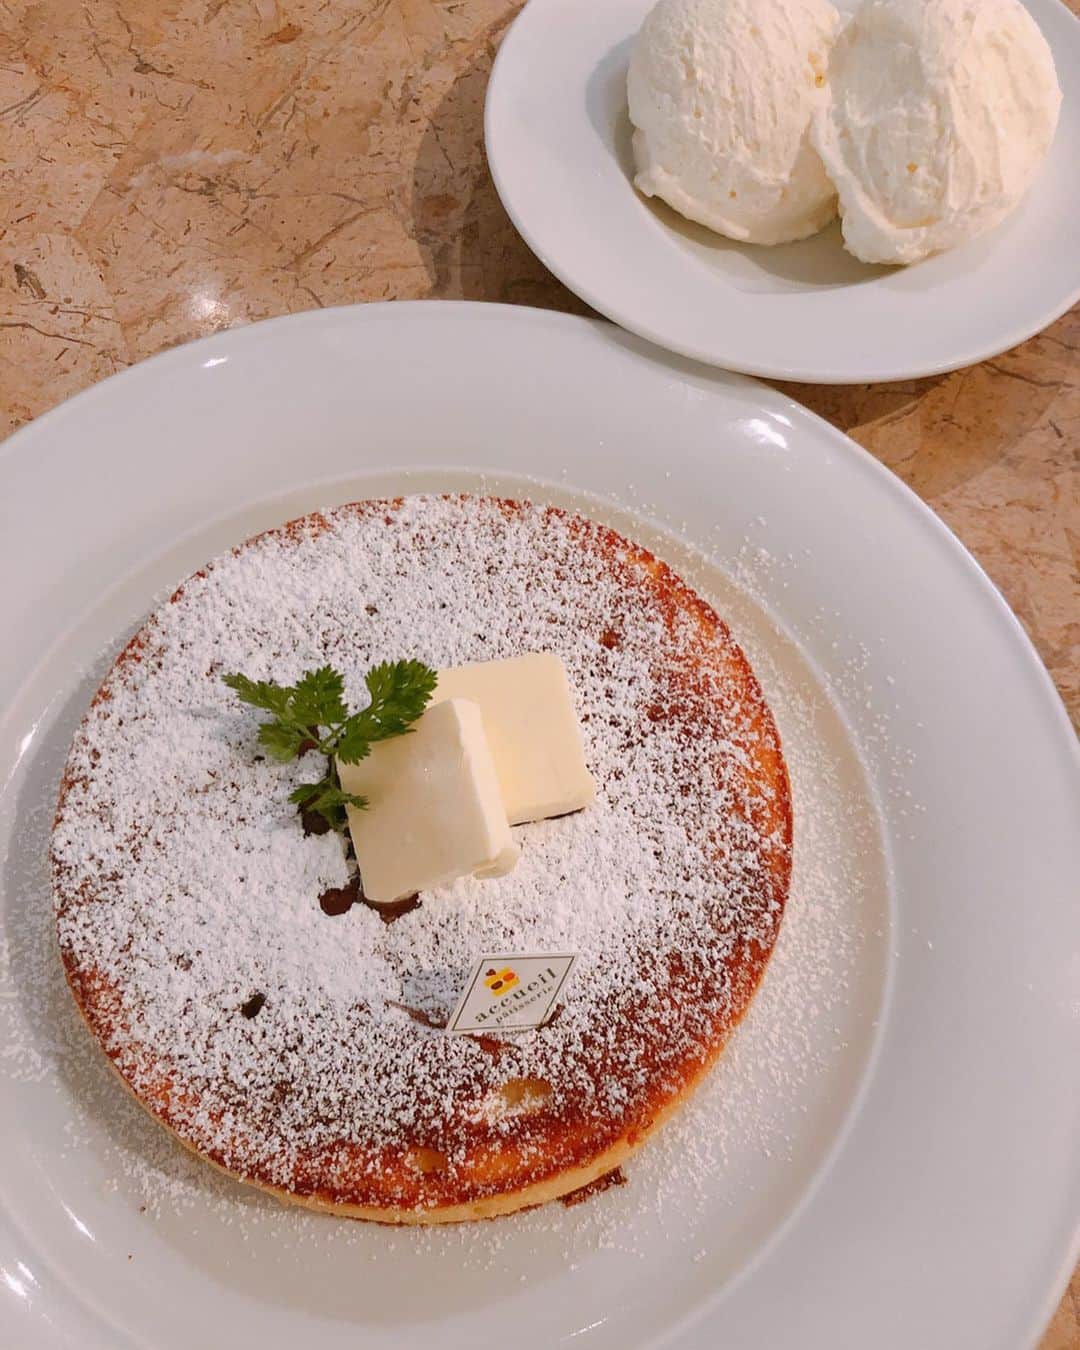 麻生夏子さんのインスタグラム写真 麻生夏子instagram 年に多くて2回ほど食べたくなるパンケーキ 私にしてはかなり珍しい この前そのタイミングが訪れたので 友達に付き合ってもらいました このパンケーキを半分こ シンプルが一番好き パン